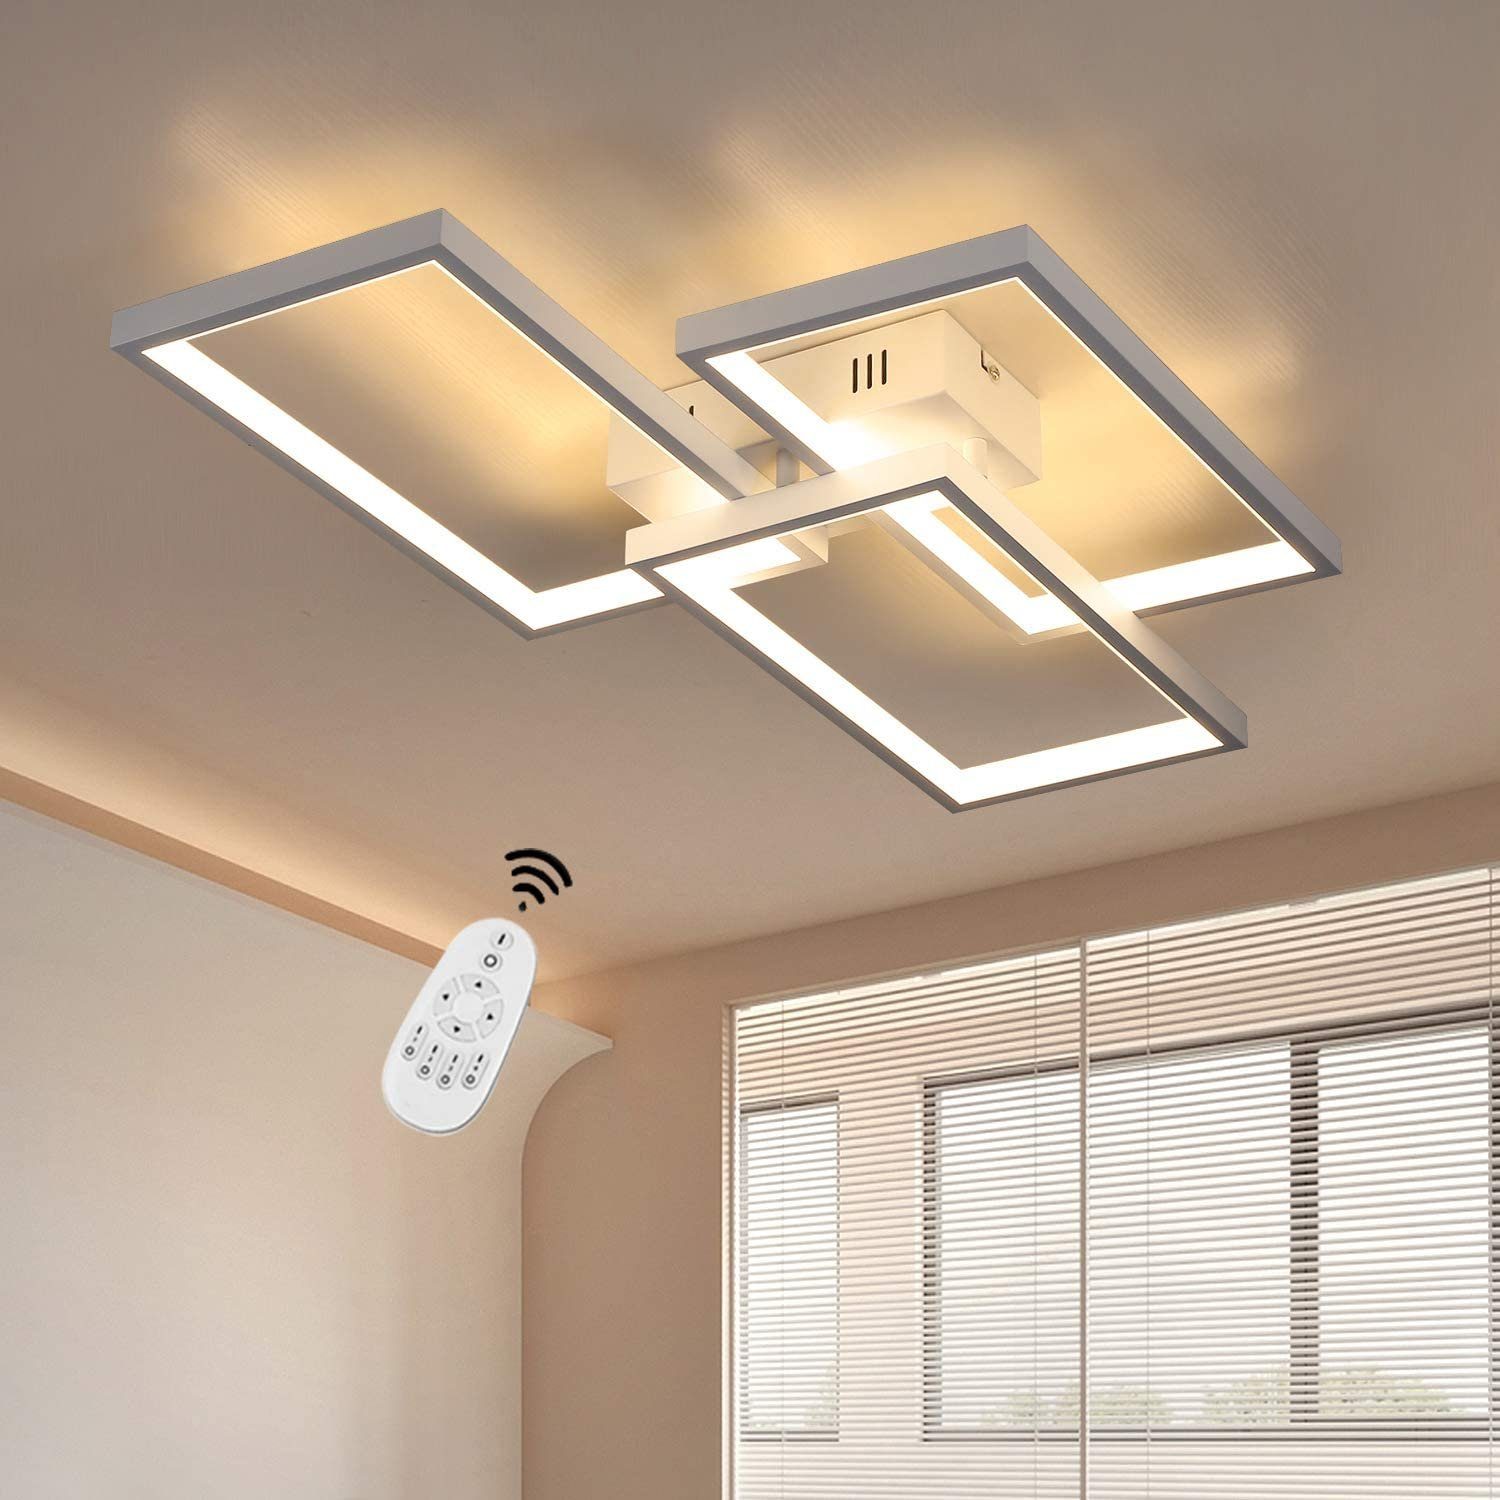 ZMH LED Deckenleuchte »Deckenlampe dimmbar mit Fernbedienung 63W Weiße  Wohnzimmerlampe aus Metall« online kaufen | OTTO